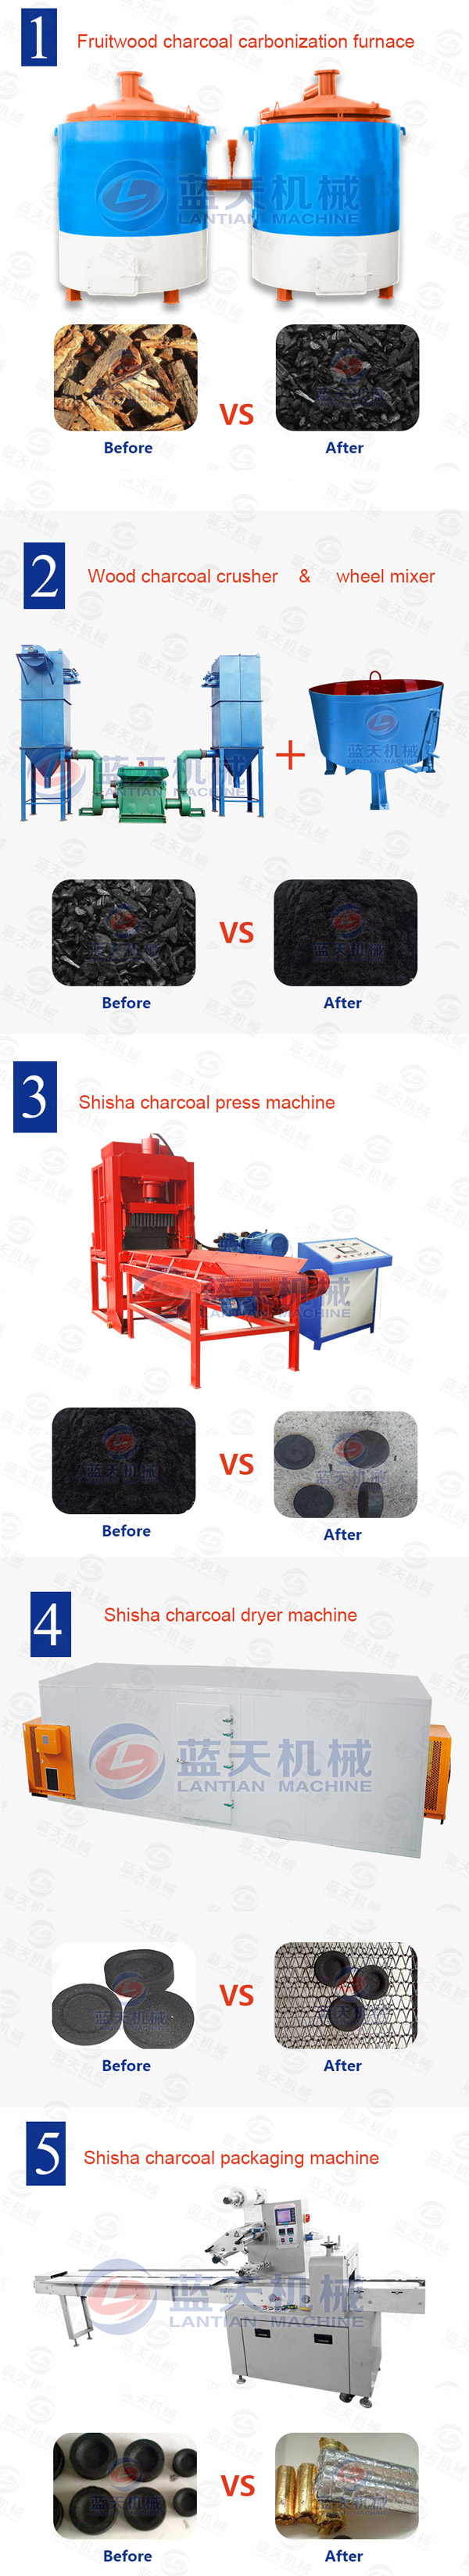 shisha charcoal machine